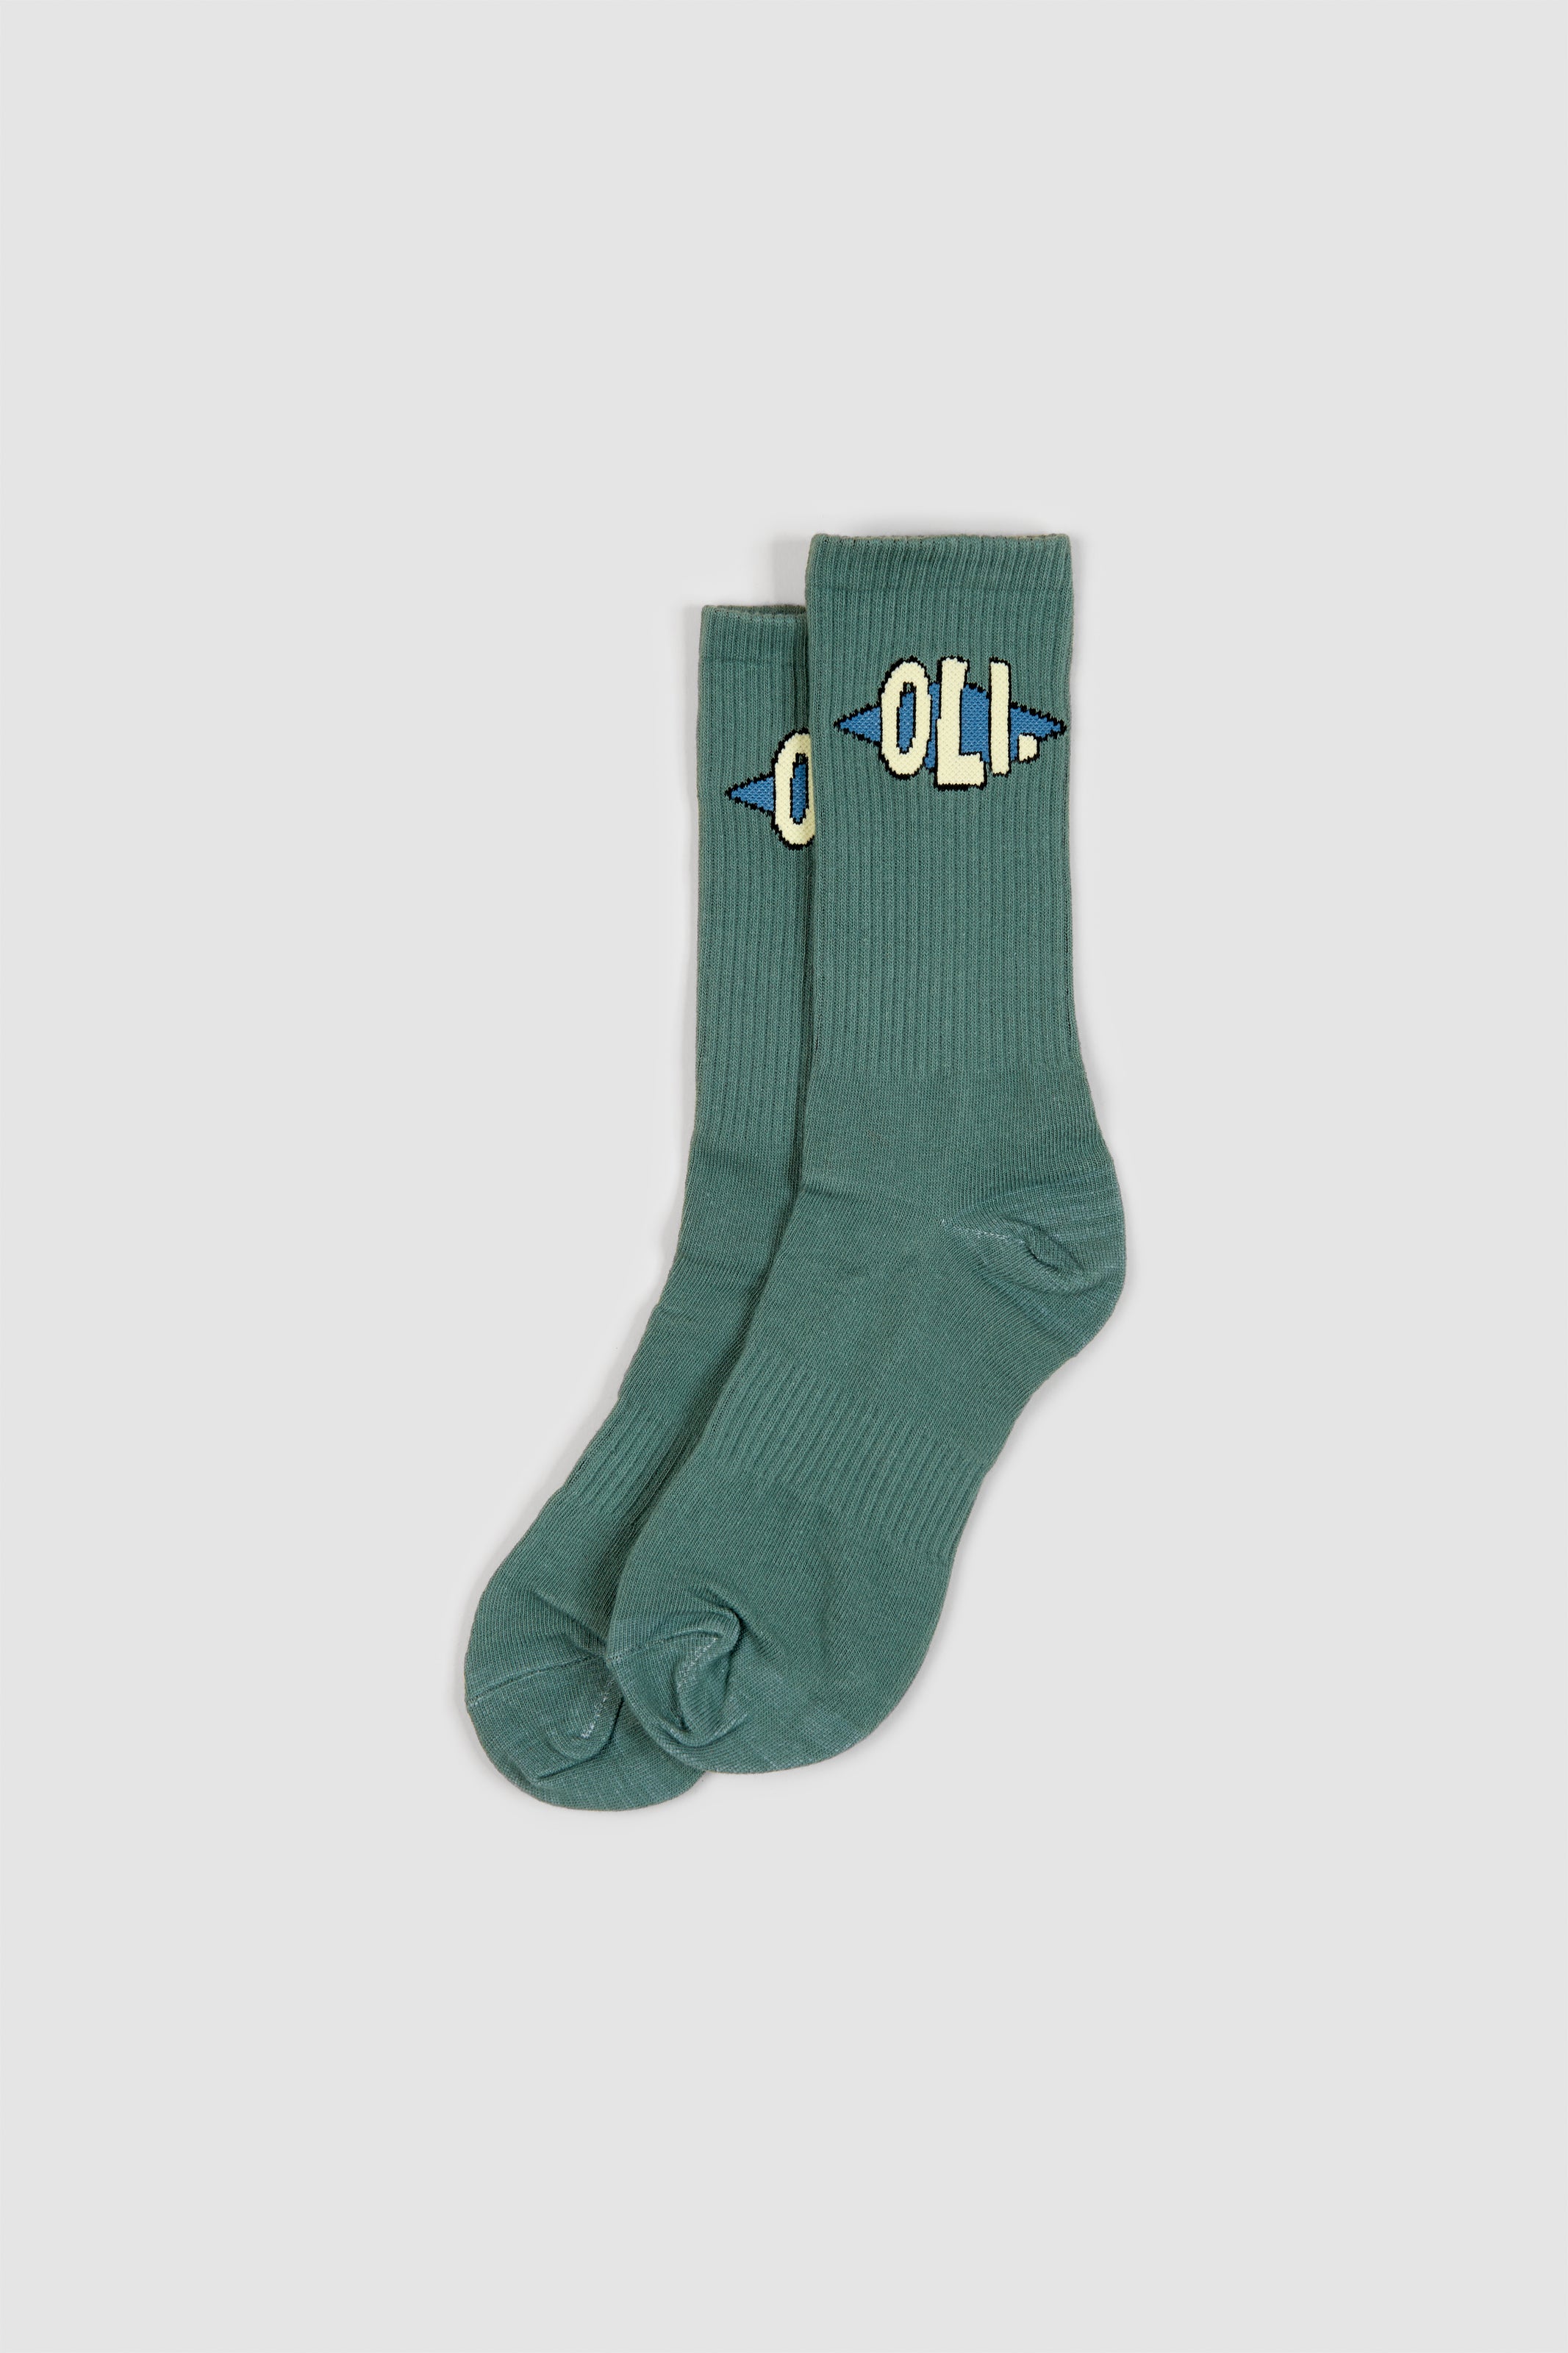 Emblem Sock - Teal